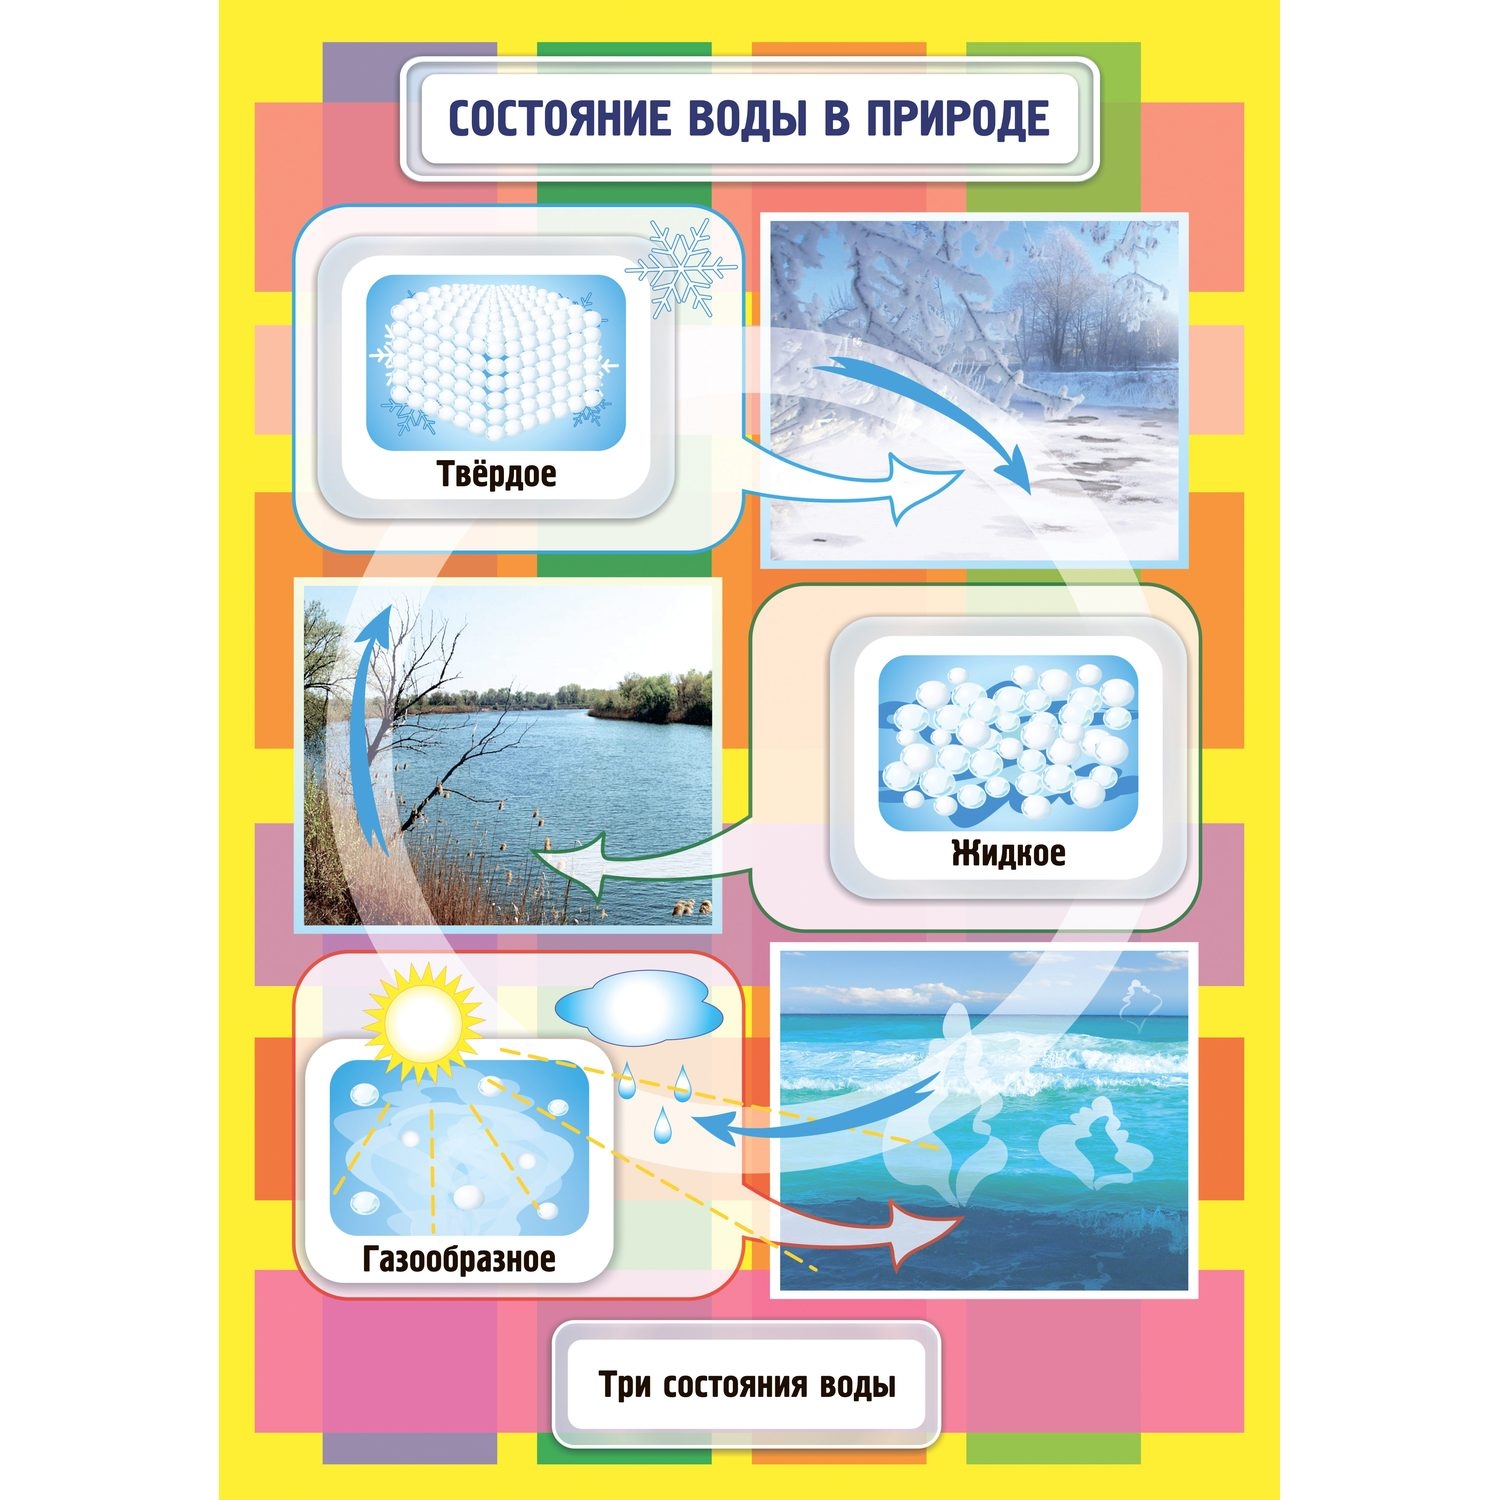 Комплект плакатов "Состояние воды": 4 плаката с методическим сопровождением